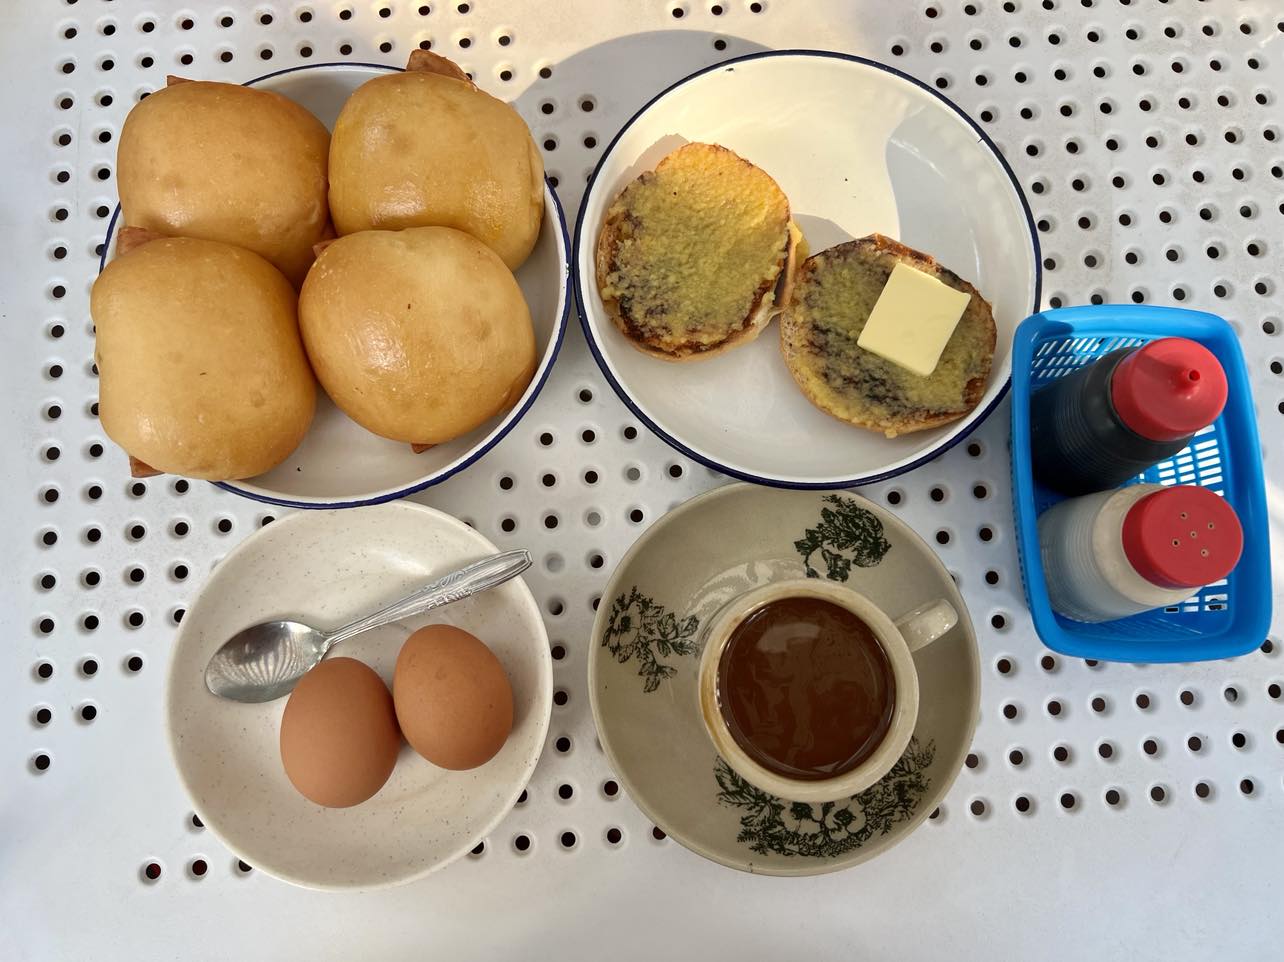 Bánh mì phết kaya và bơ ăn cùng trứng luộc lòng đào, trà hoặc cà phê tại quán Chin Mei Chin. Thực khách có thể gọi thêm các loại bánh mặn và ngọt khác, bên trong có nhân mặn vị ruốc cá hoặc xúc xích. Ảnh: Phương Anh